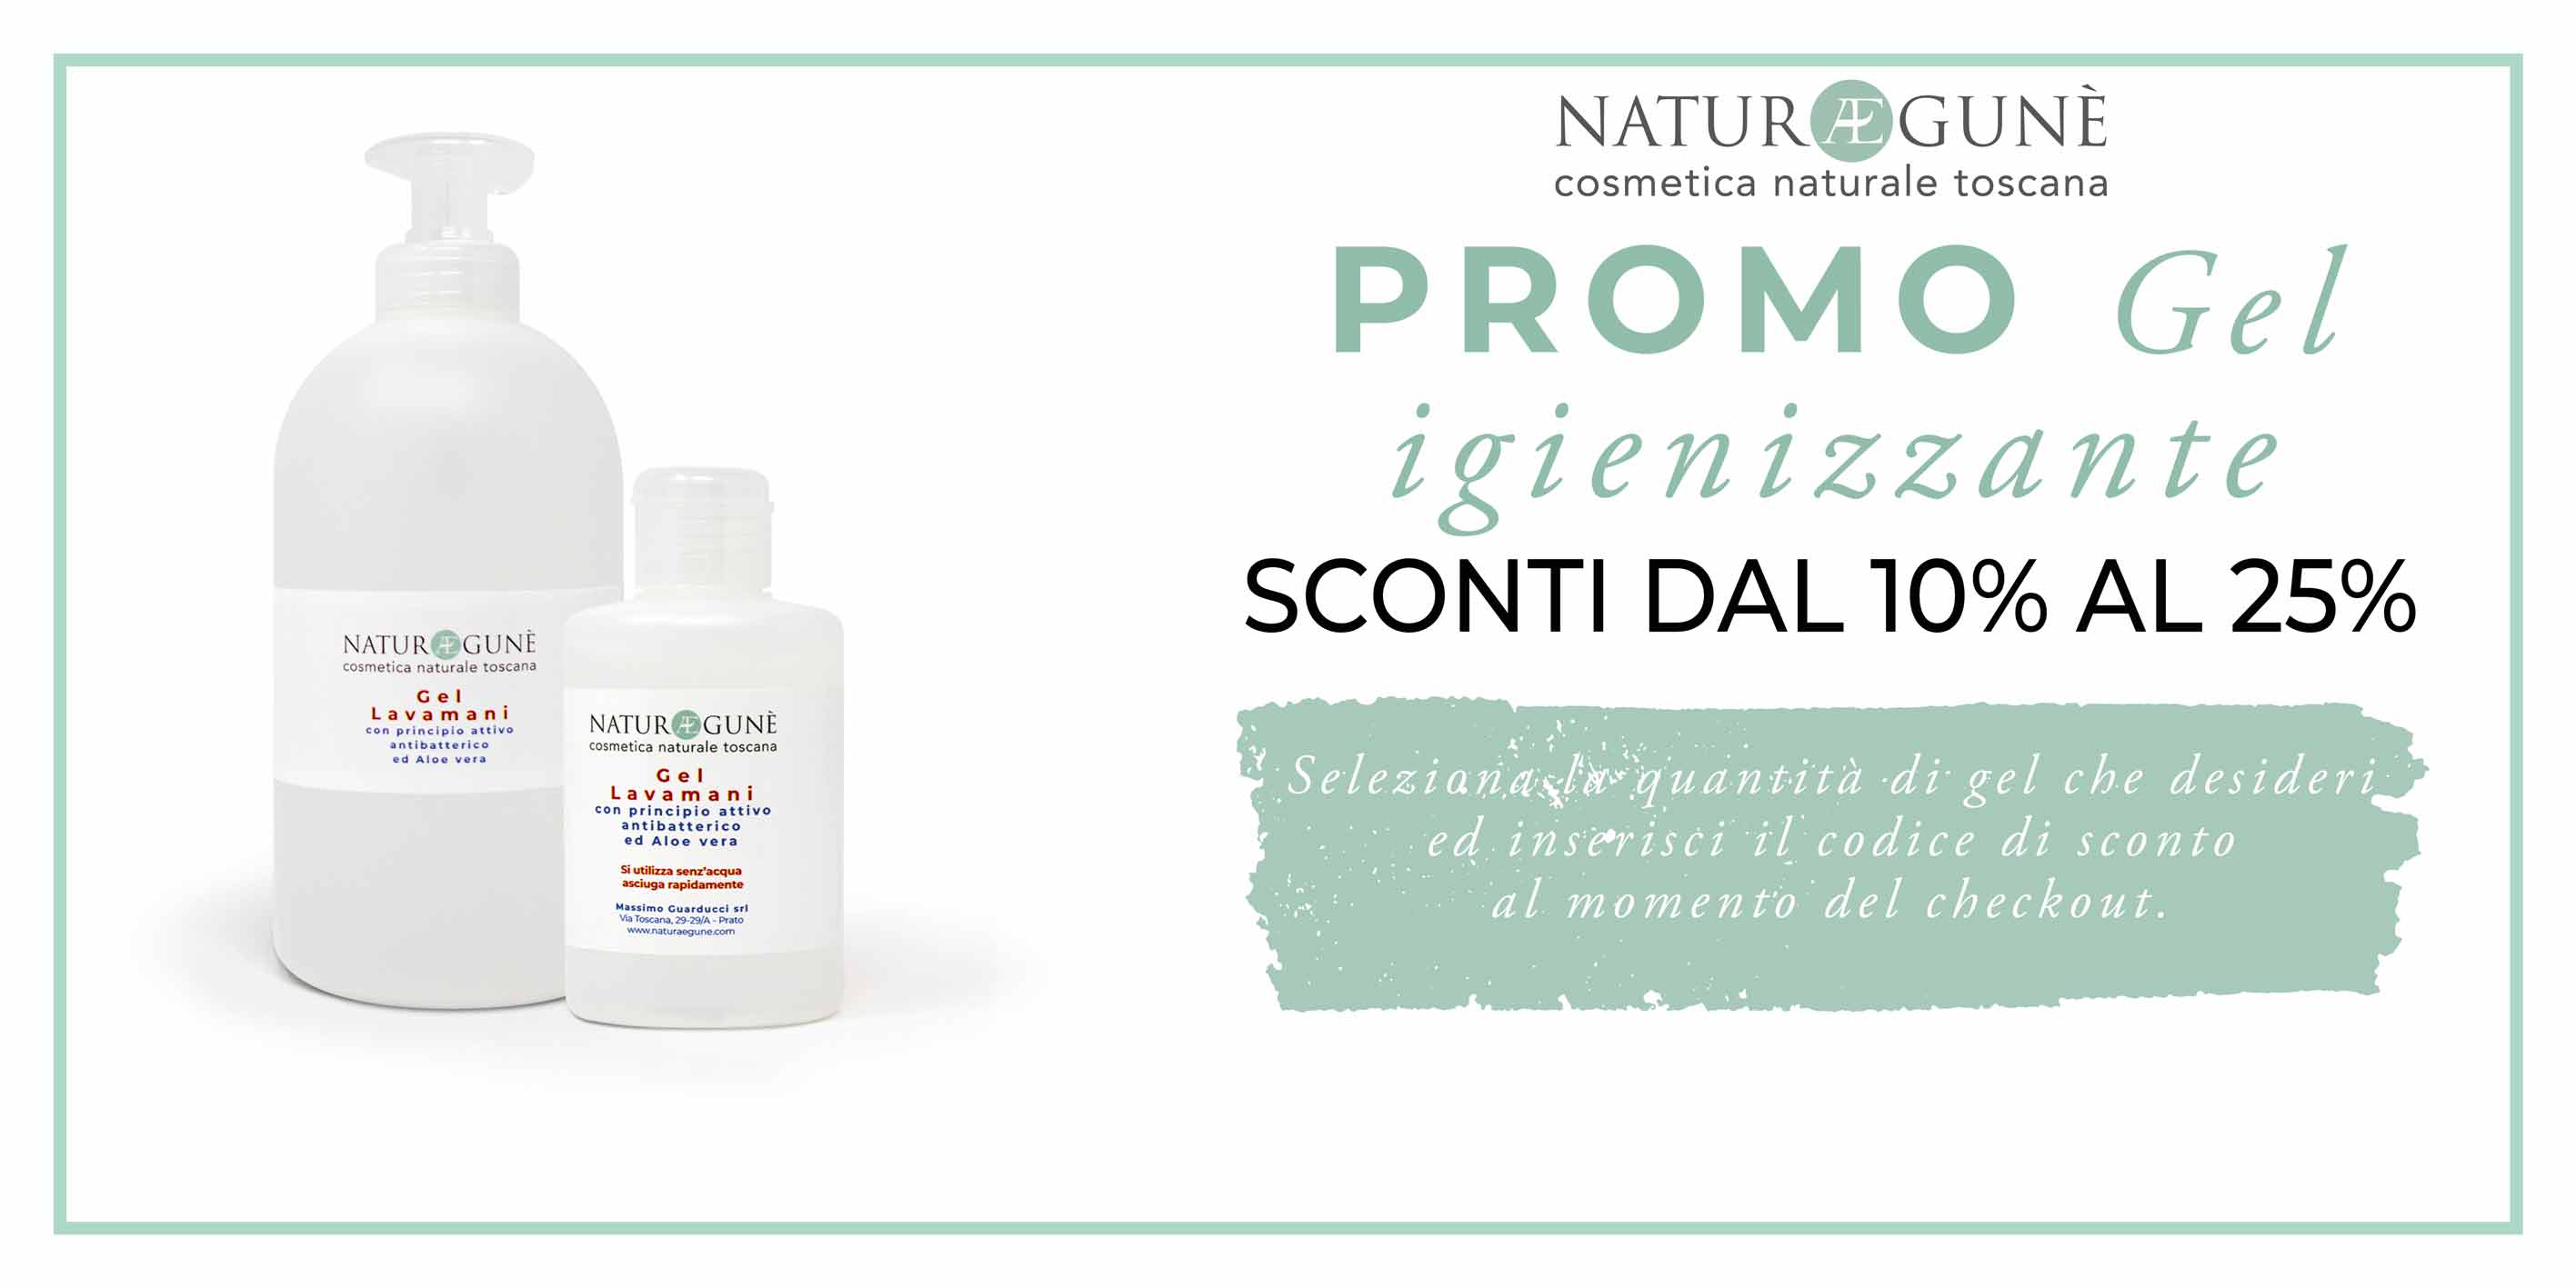 Promo Gel Lavamani Discounts from 10% to 25% – Naturae Gunè - Cosmetica  naturale toscana